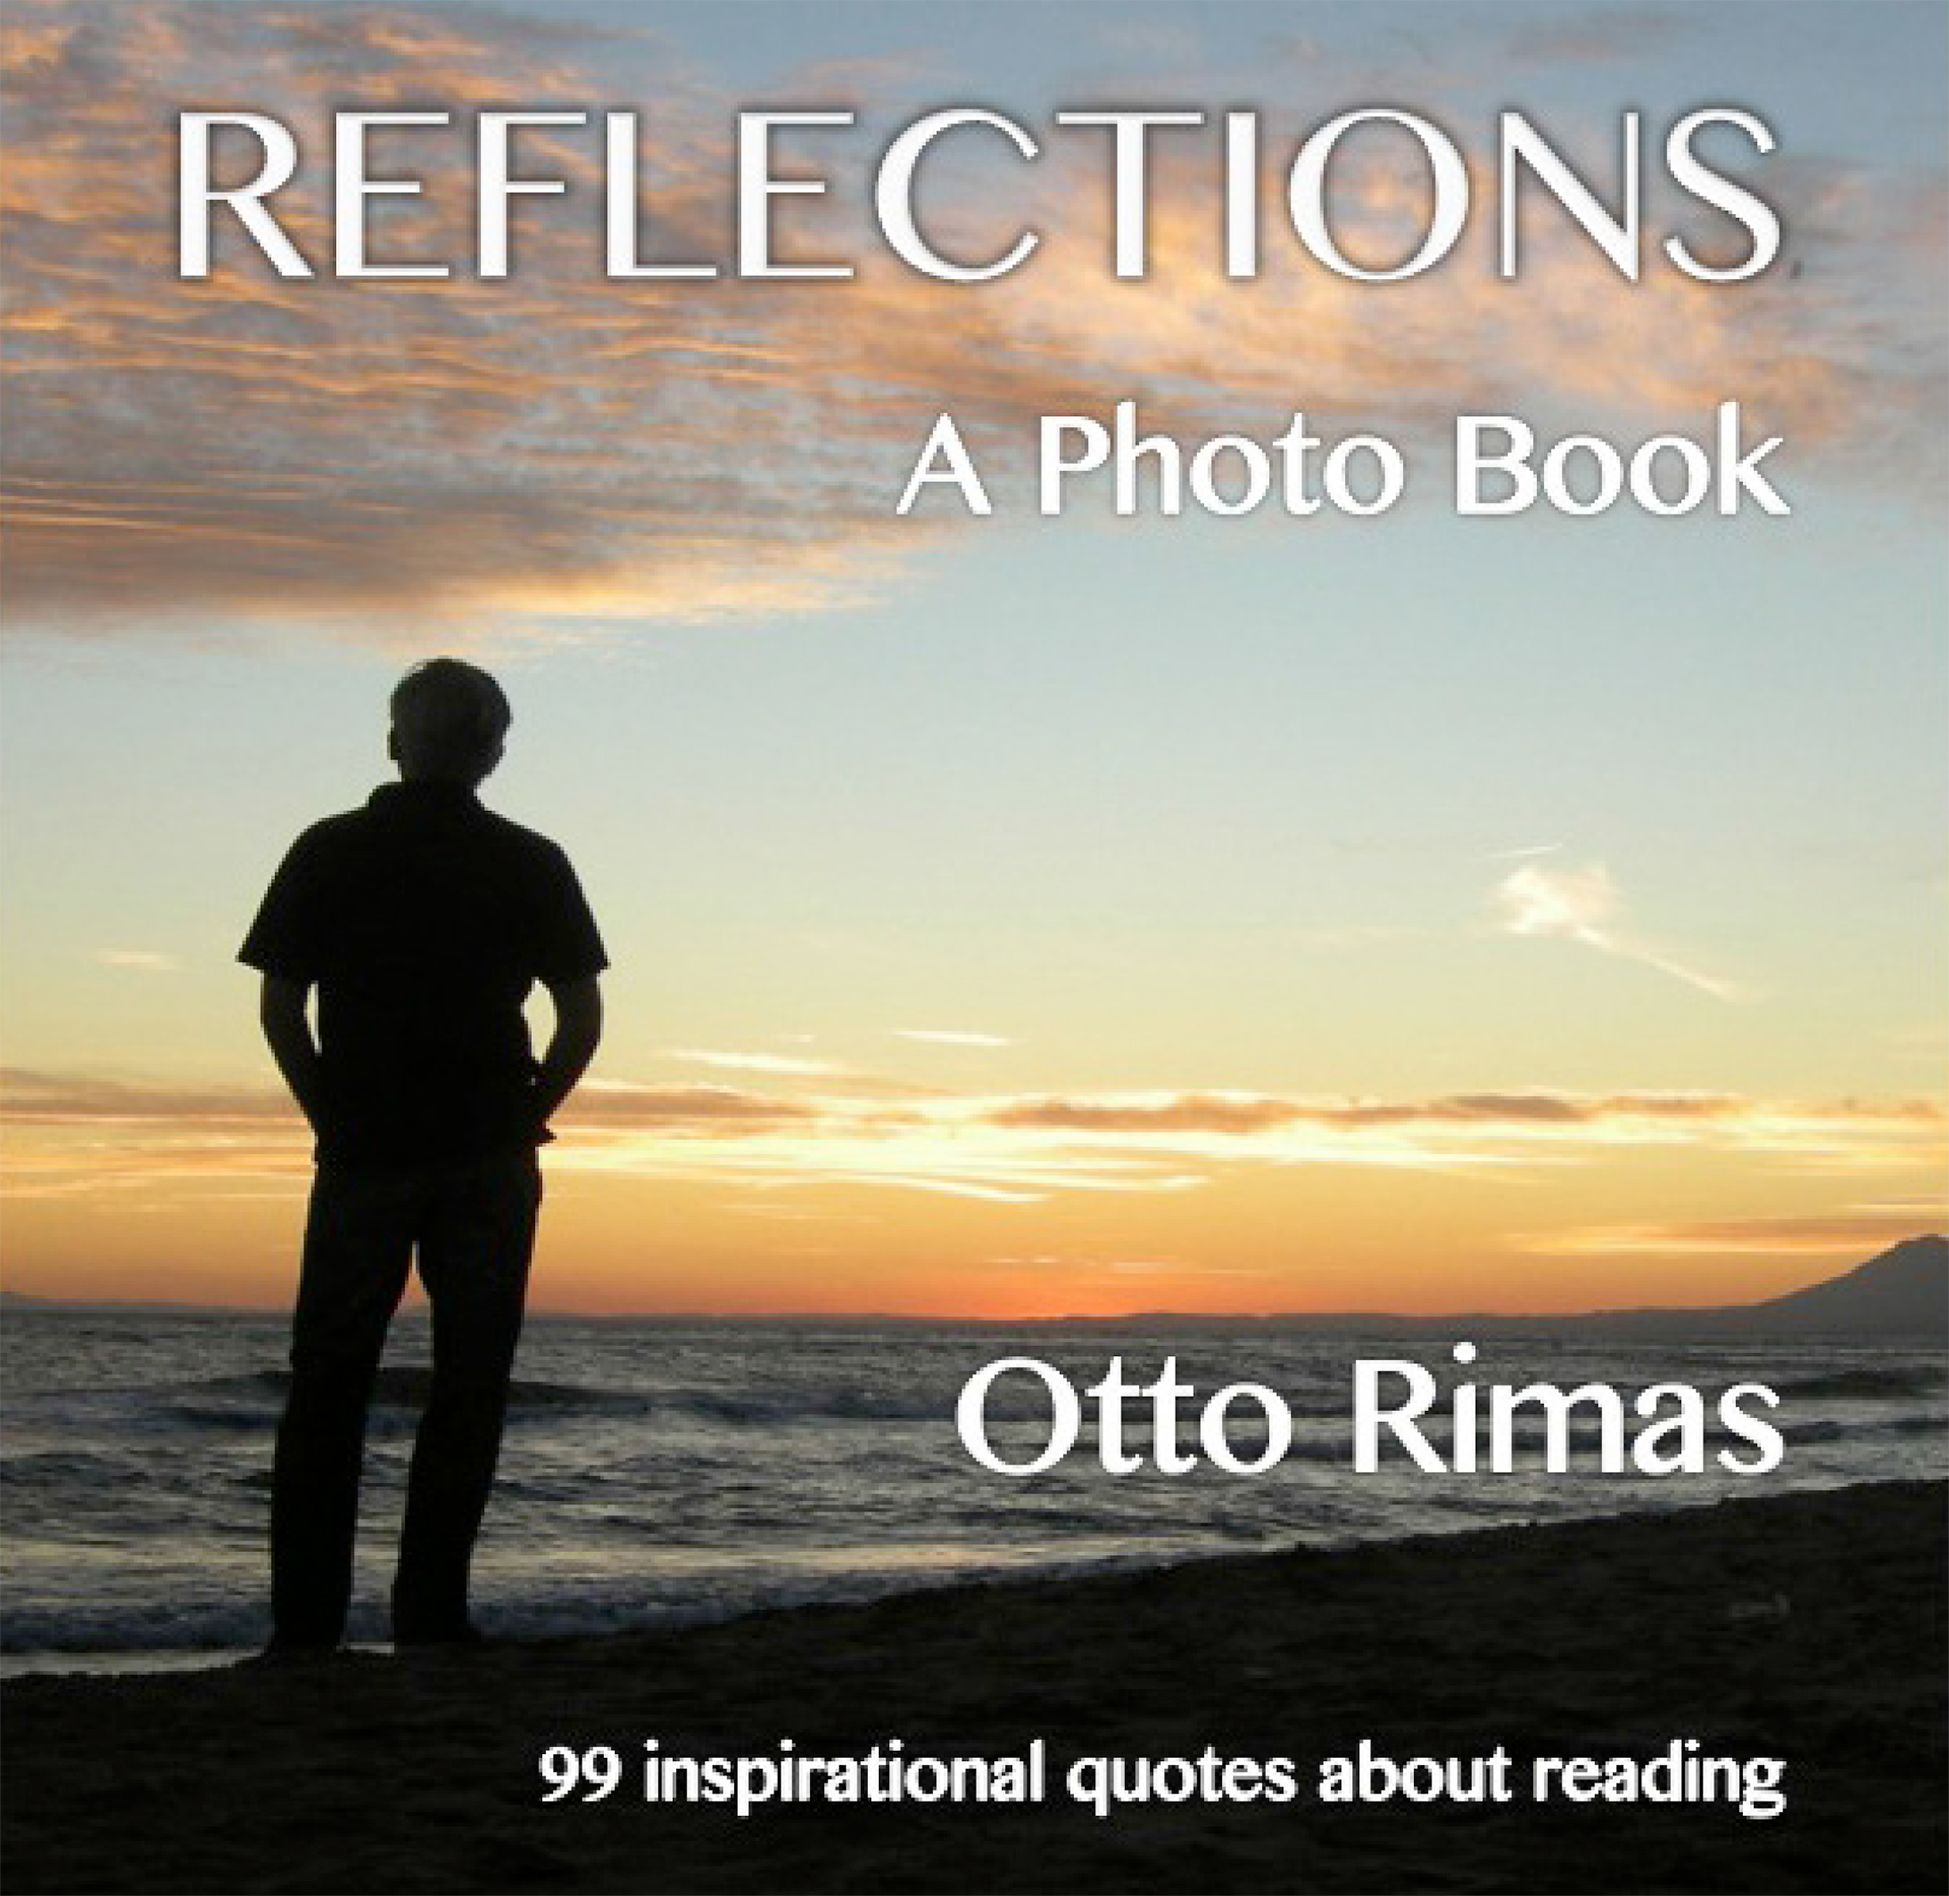 Reflections - A Photo Book, eBook by Otto Rimas